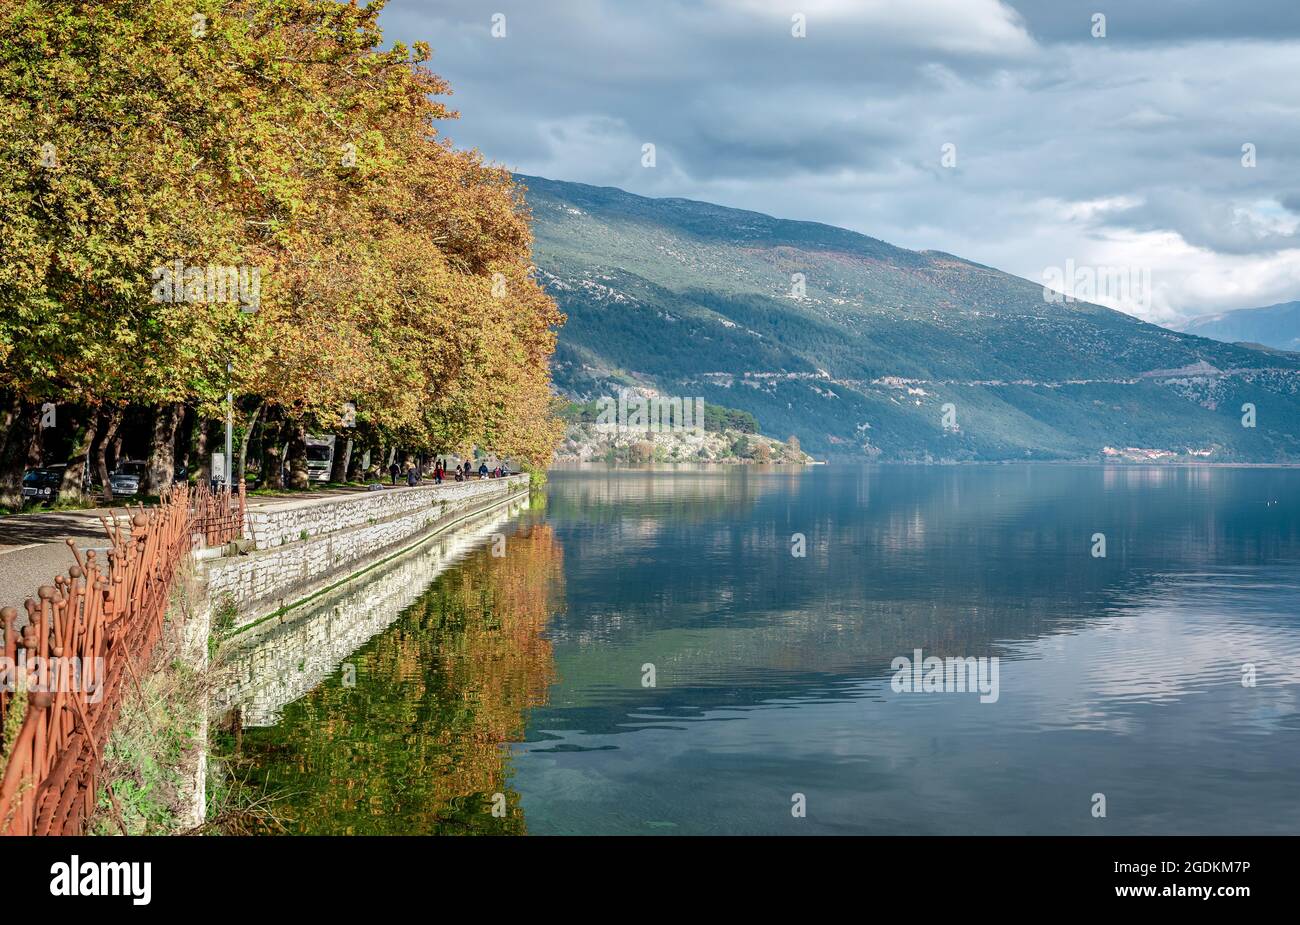 Ioannina, Griechenland - November 23 2019: Blick auf den Pamvotis-See und die Uferpromenade der Stadt Ioannina. Stockfoto